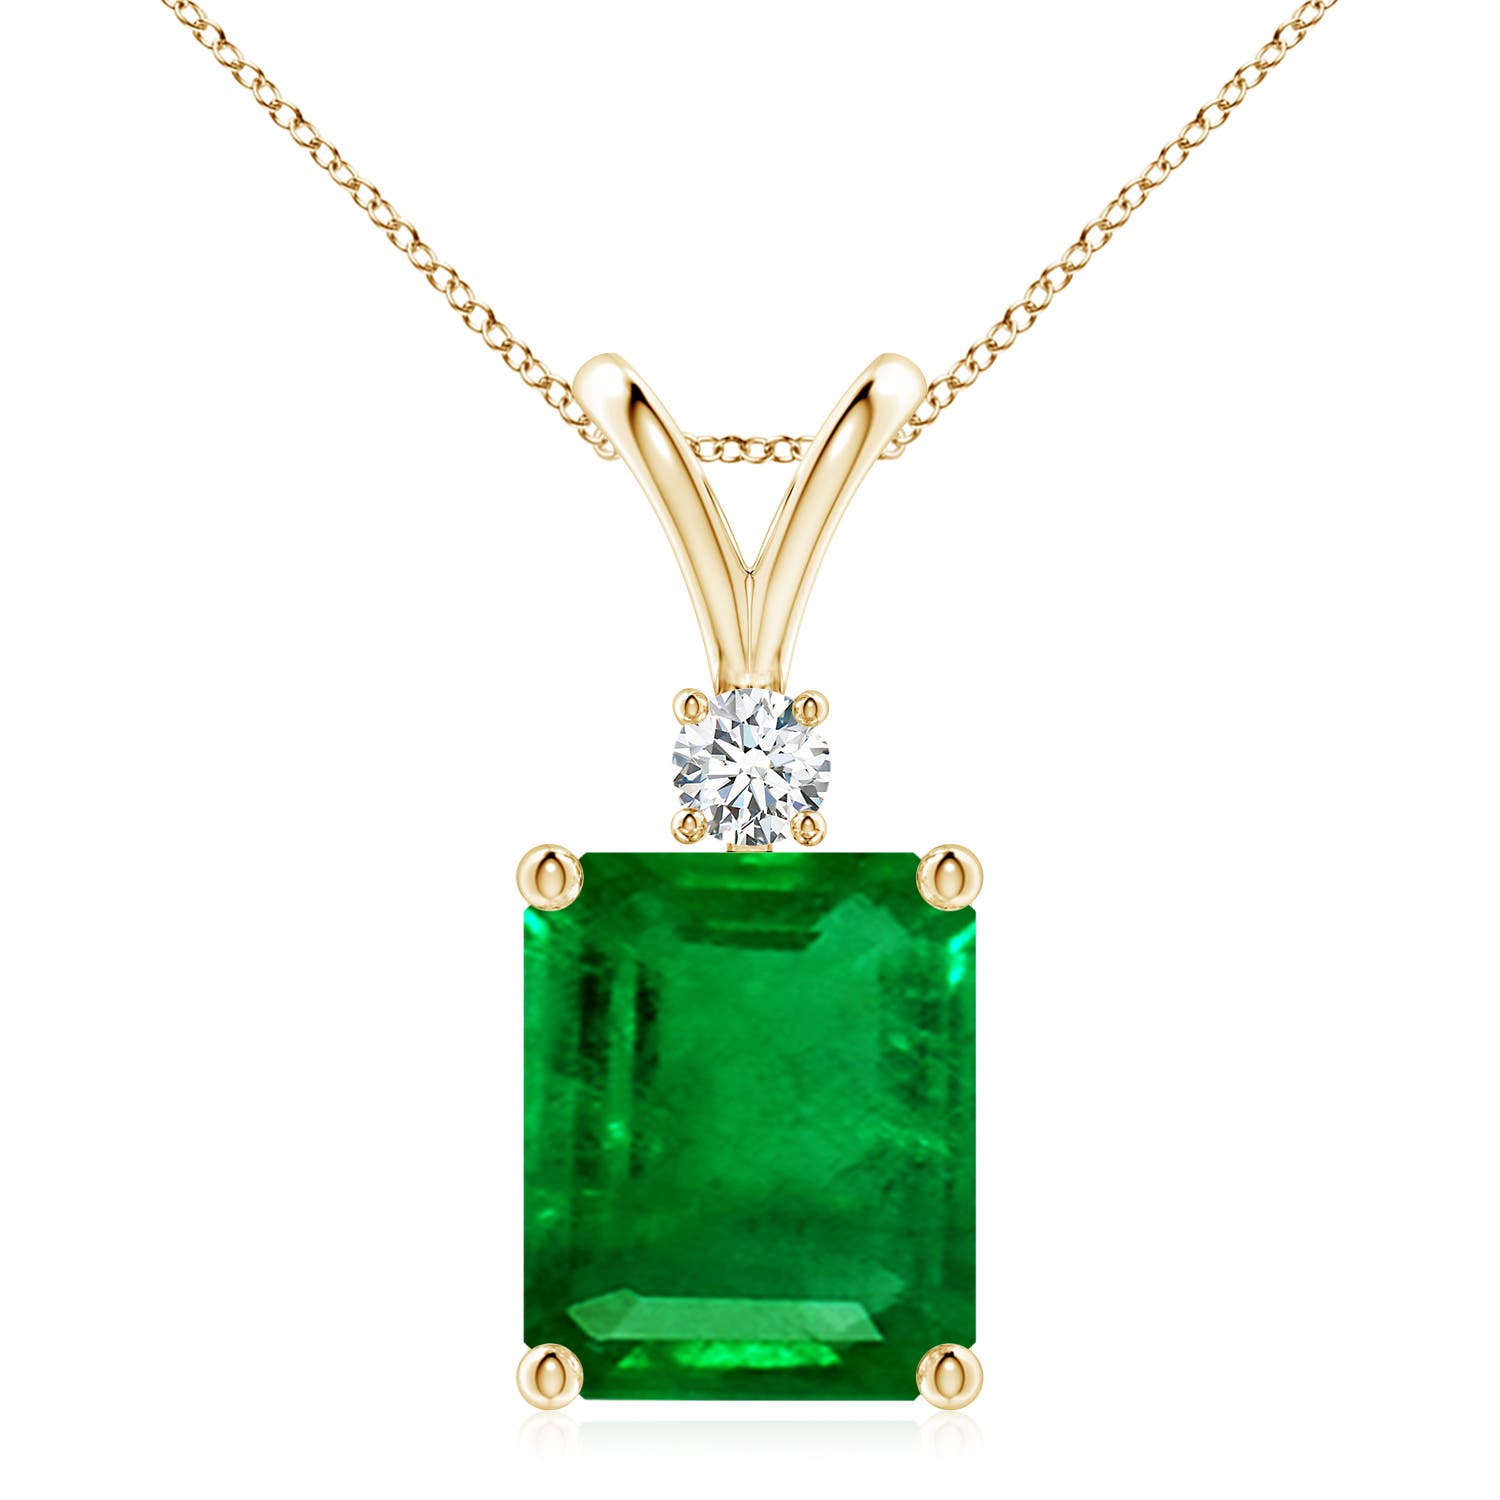 AAAA - Emerald / 5.91 CT / 14 KT Yellow Gold